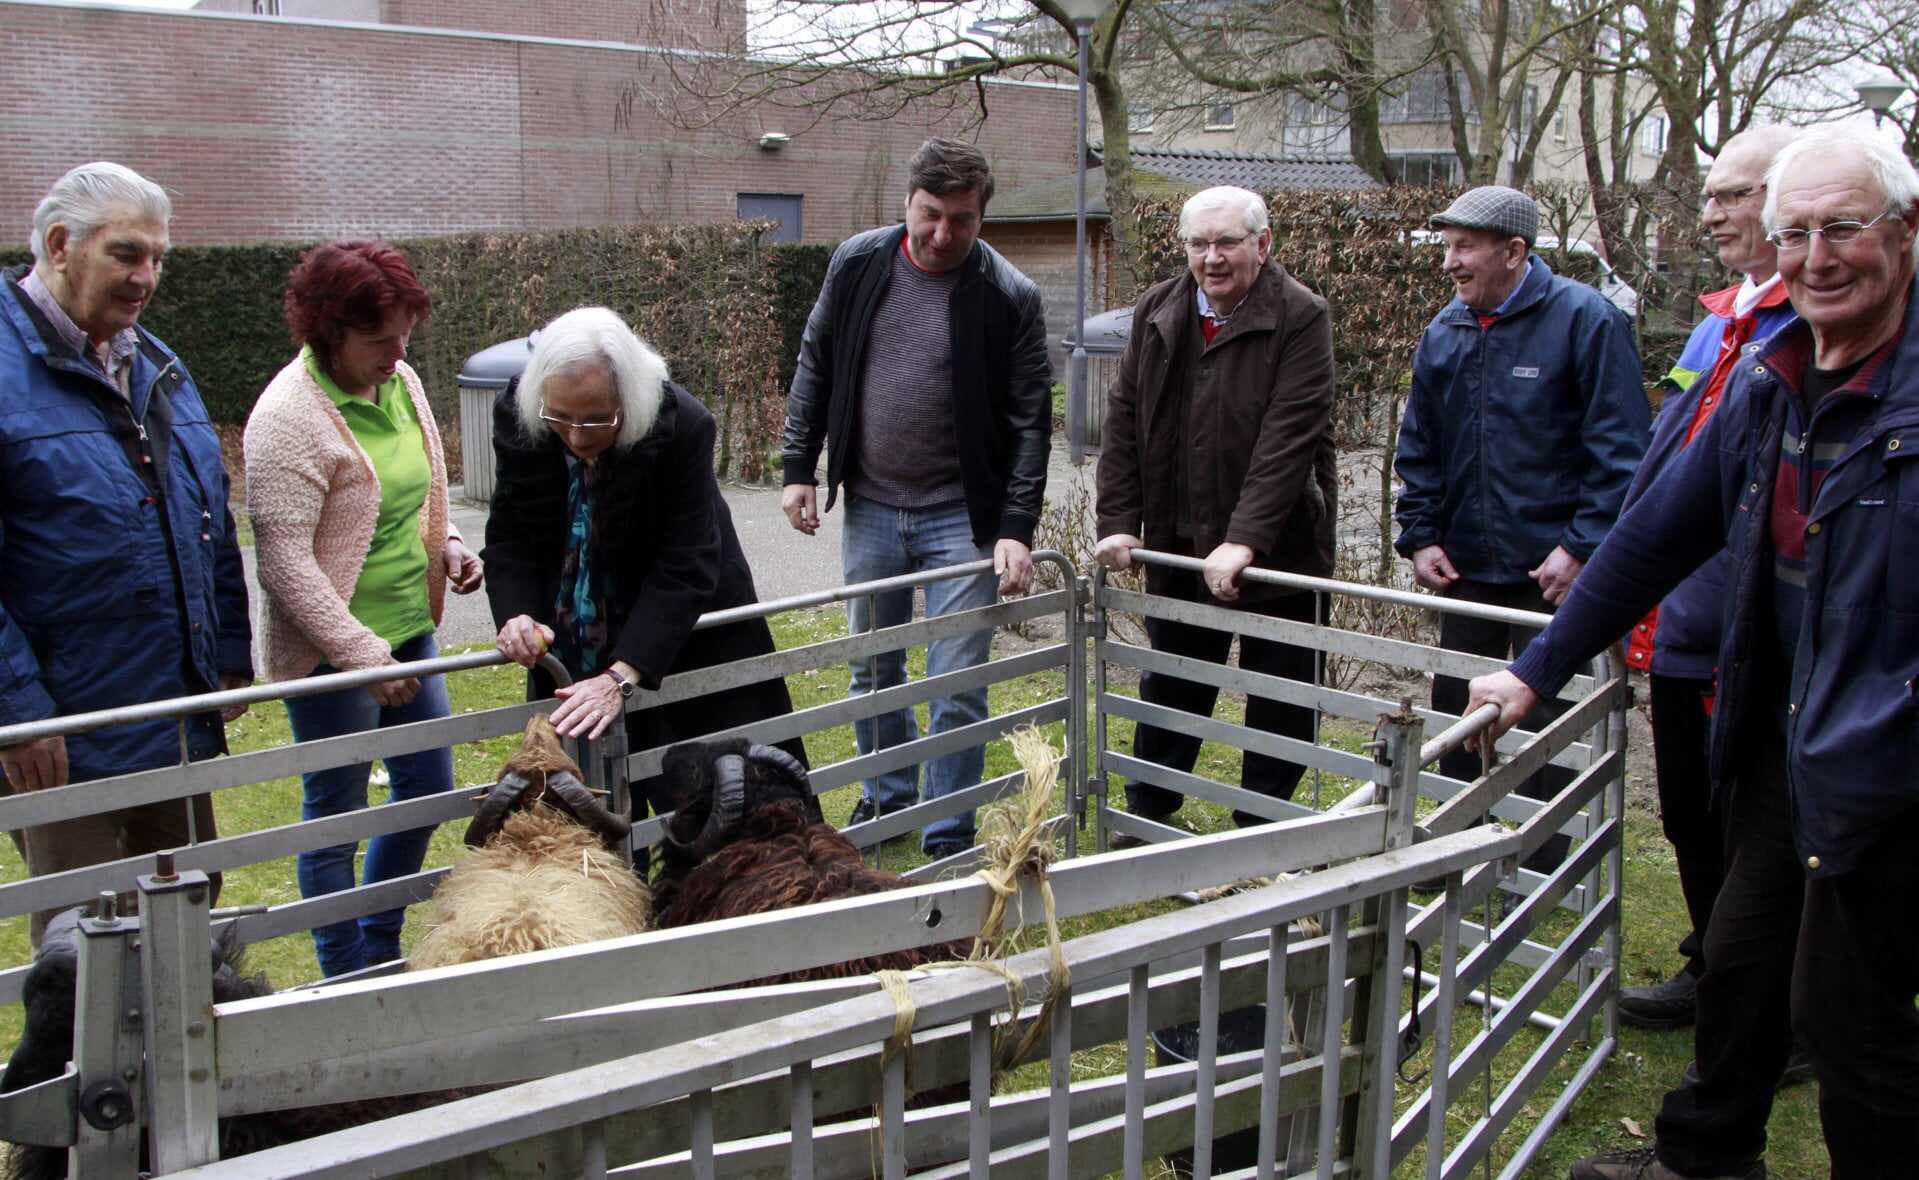 Bezoekers van de open dag van de Zorggroep Elde in Simeonshof te Boxtel konden buiten enkele schapen bekijken. De dieren waren afkomstig van zorgboerderij 't Binnenveld in Schijndel. (Foto: Gerard Schalkx).